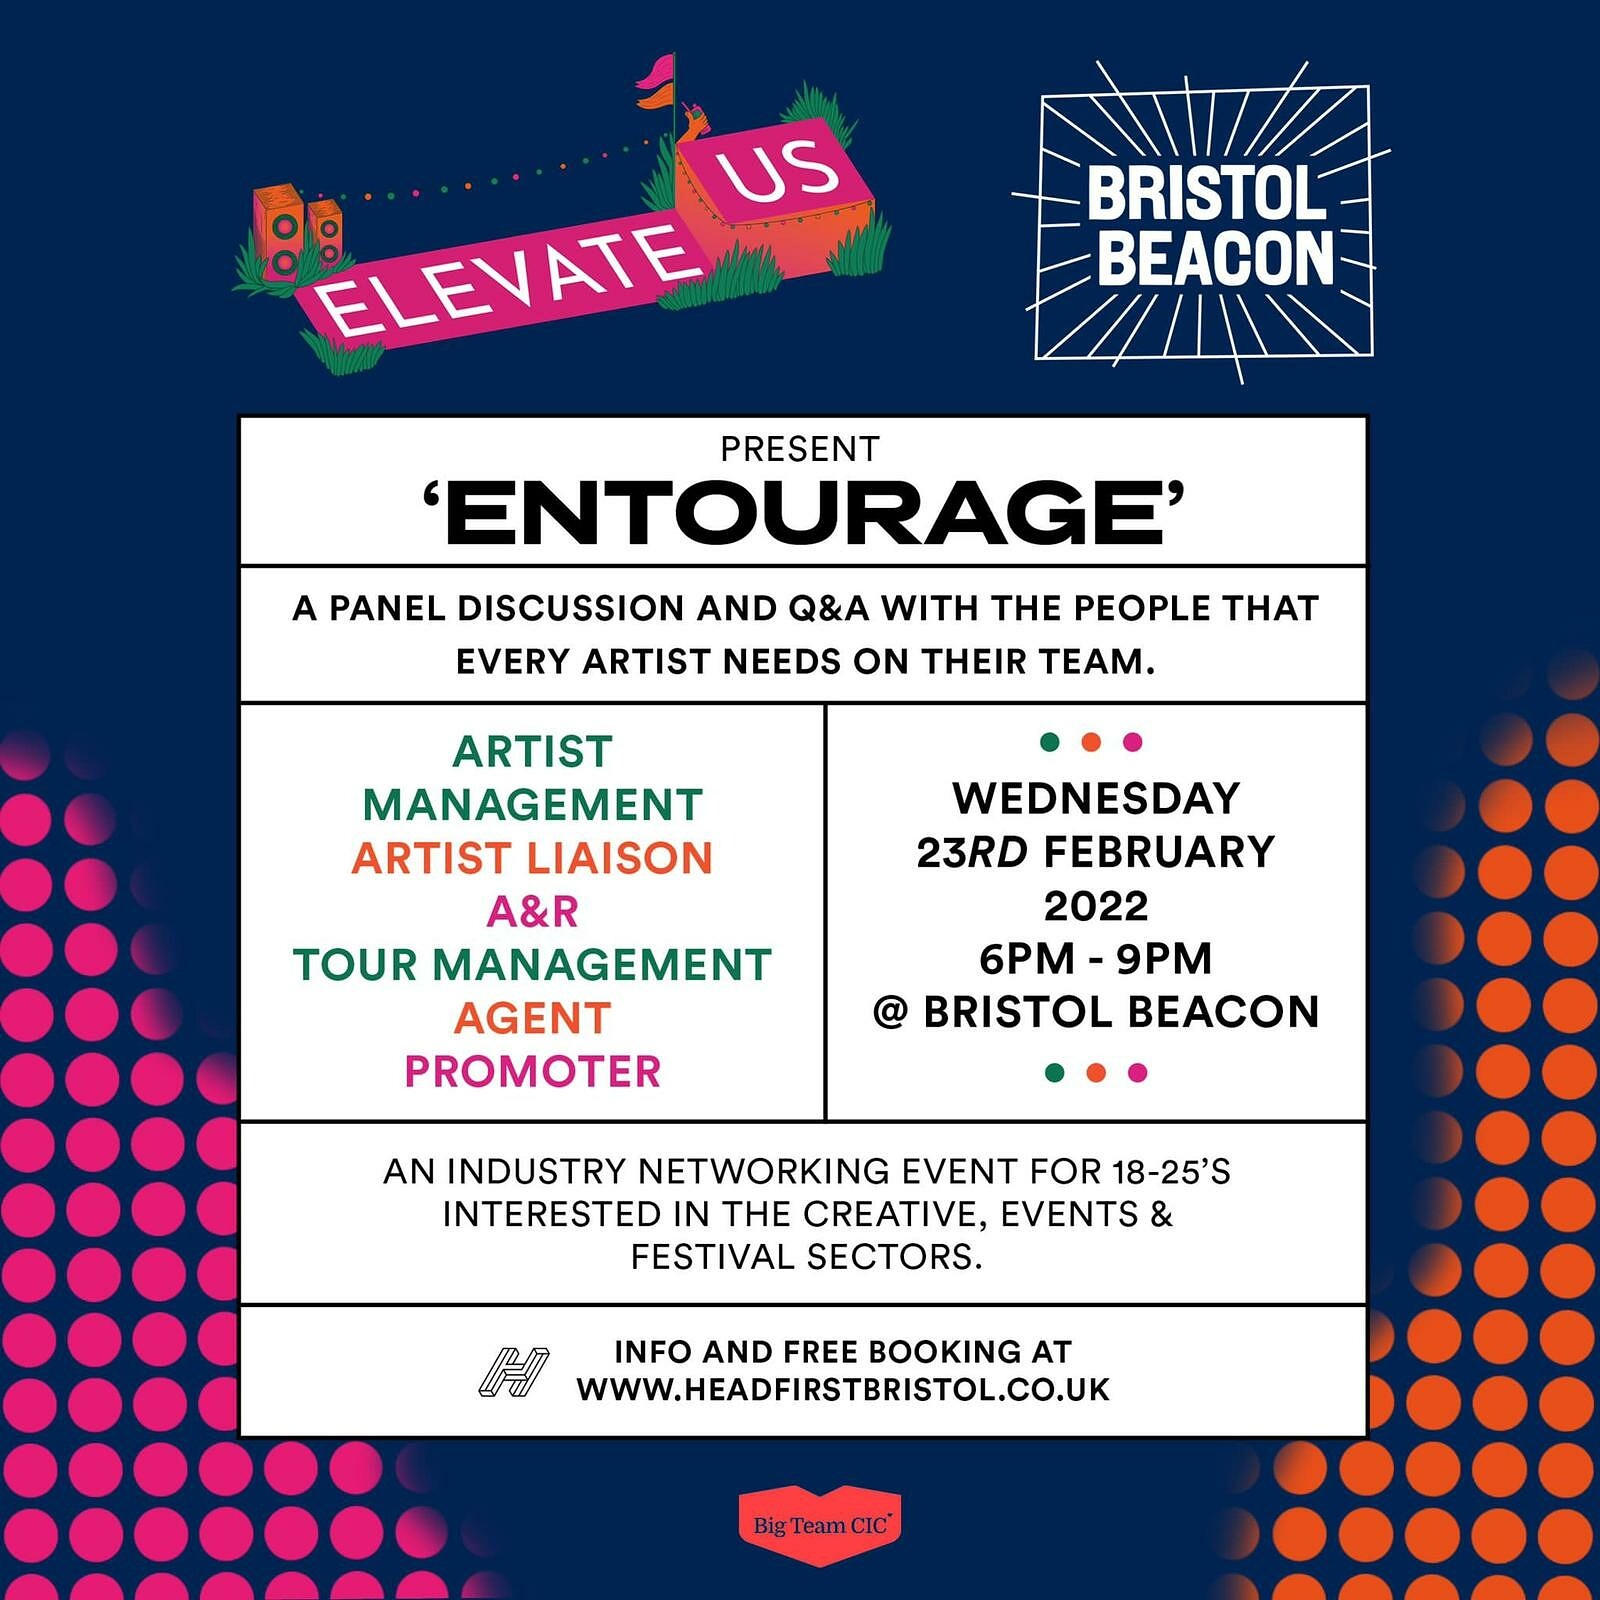 Elevate Us - Entourage at Bristol Beacon